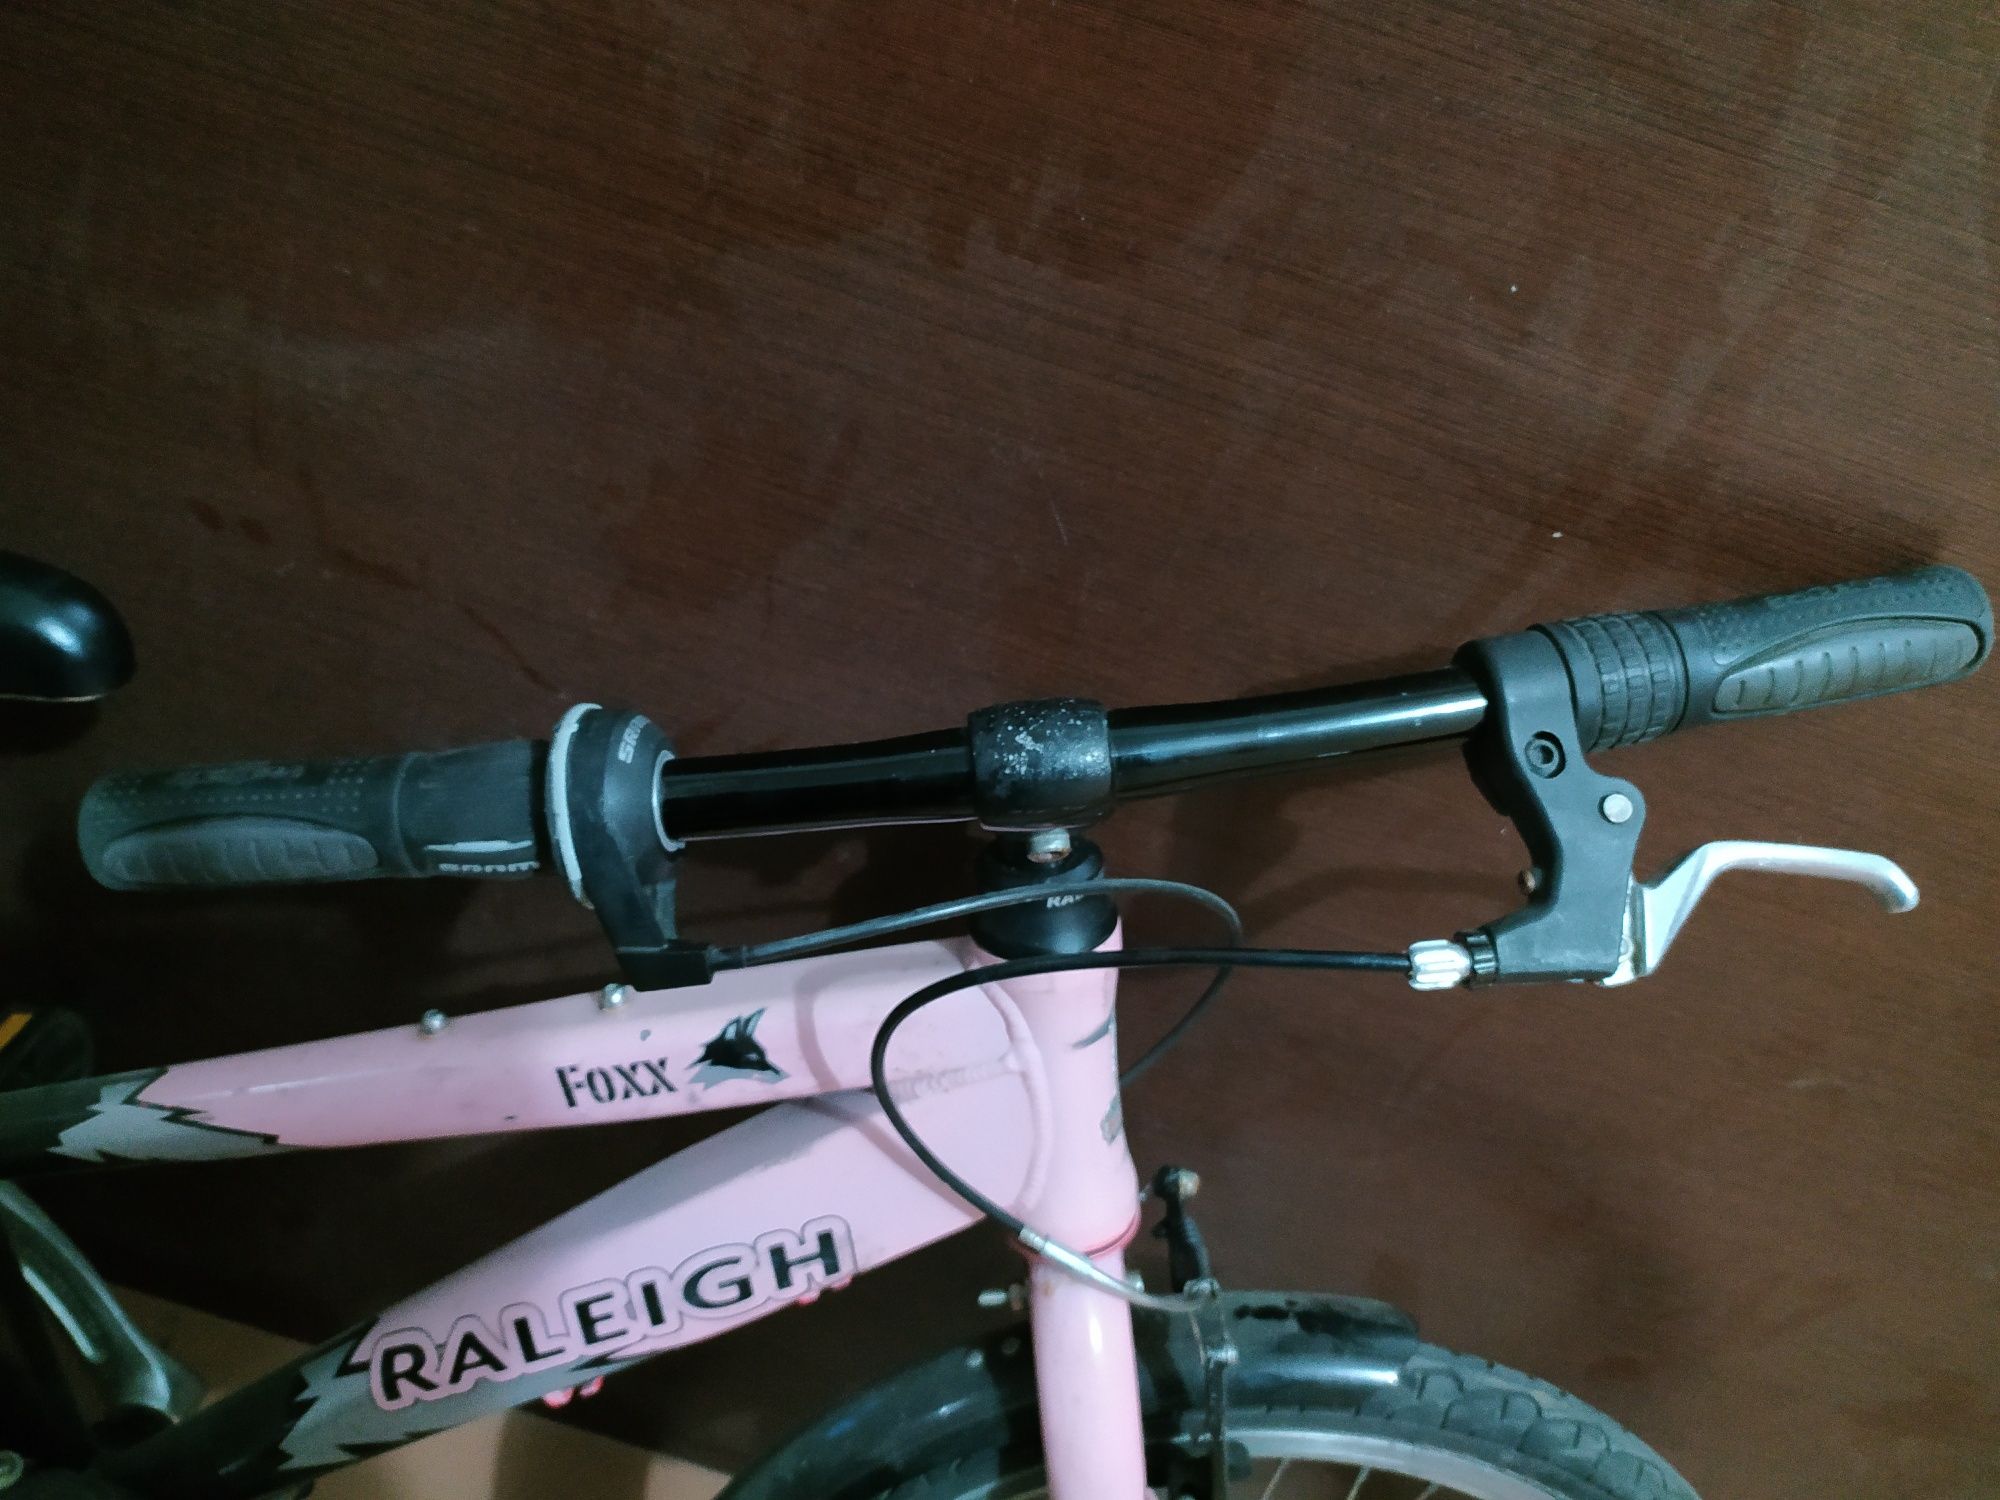 Продам подростковый велосипед Raleigh fox